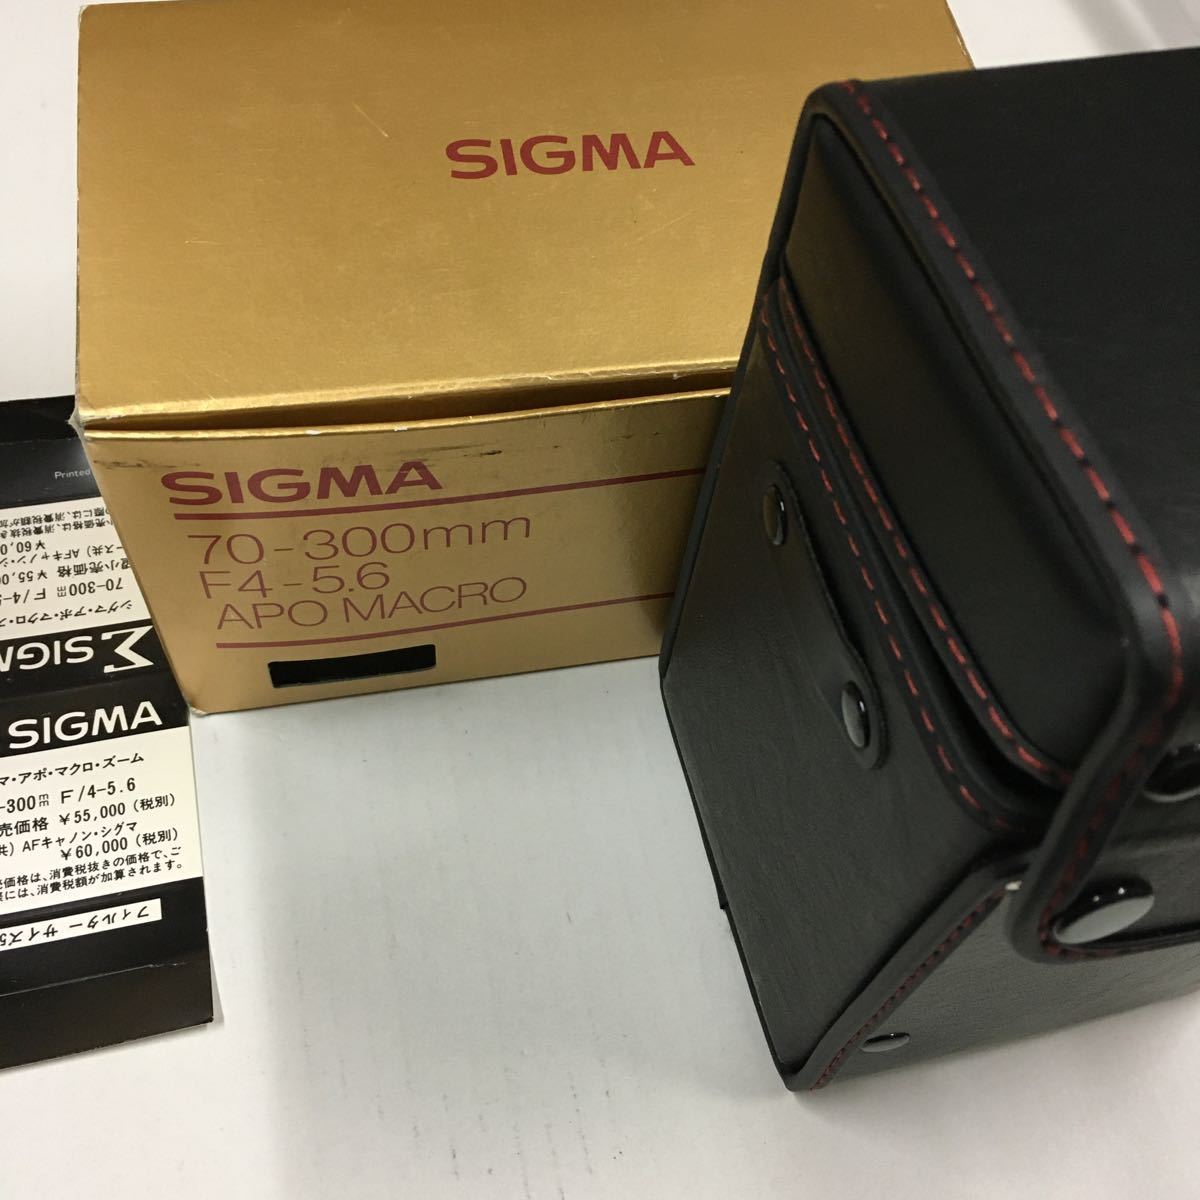 SIGMA 70-300mm F4-5.6 APO マクロCanon用 シグマ アポ マクロ ズーム